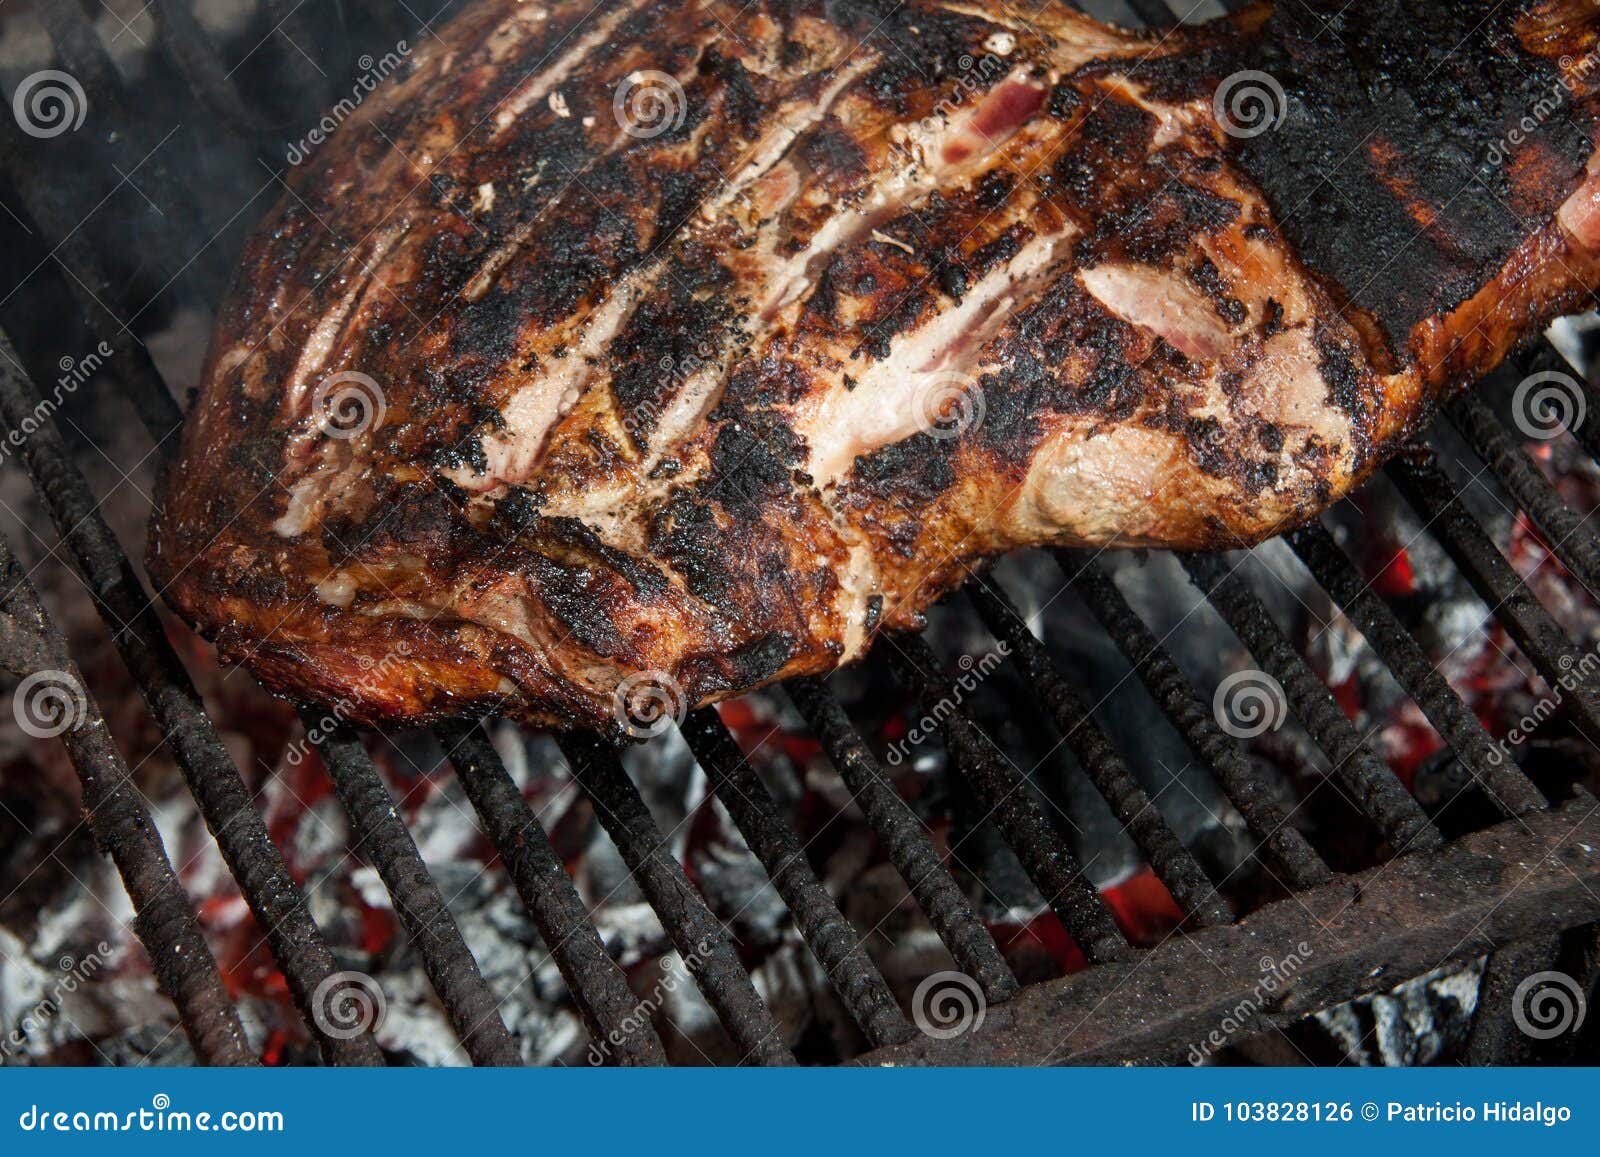 pork leg grilled